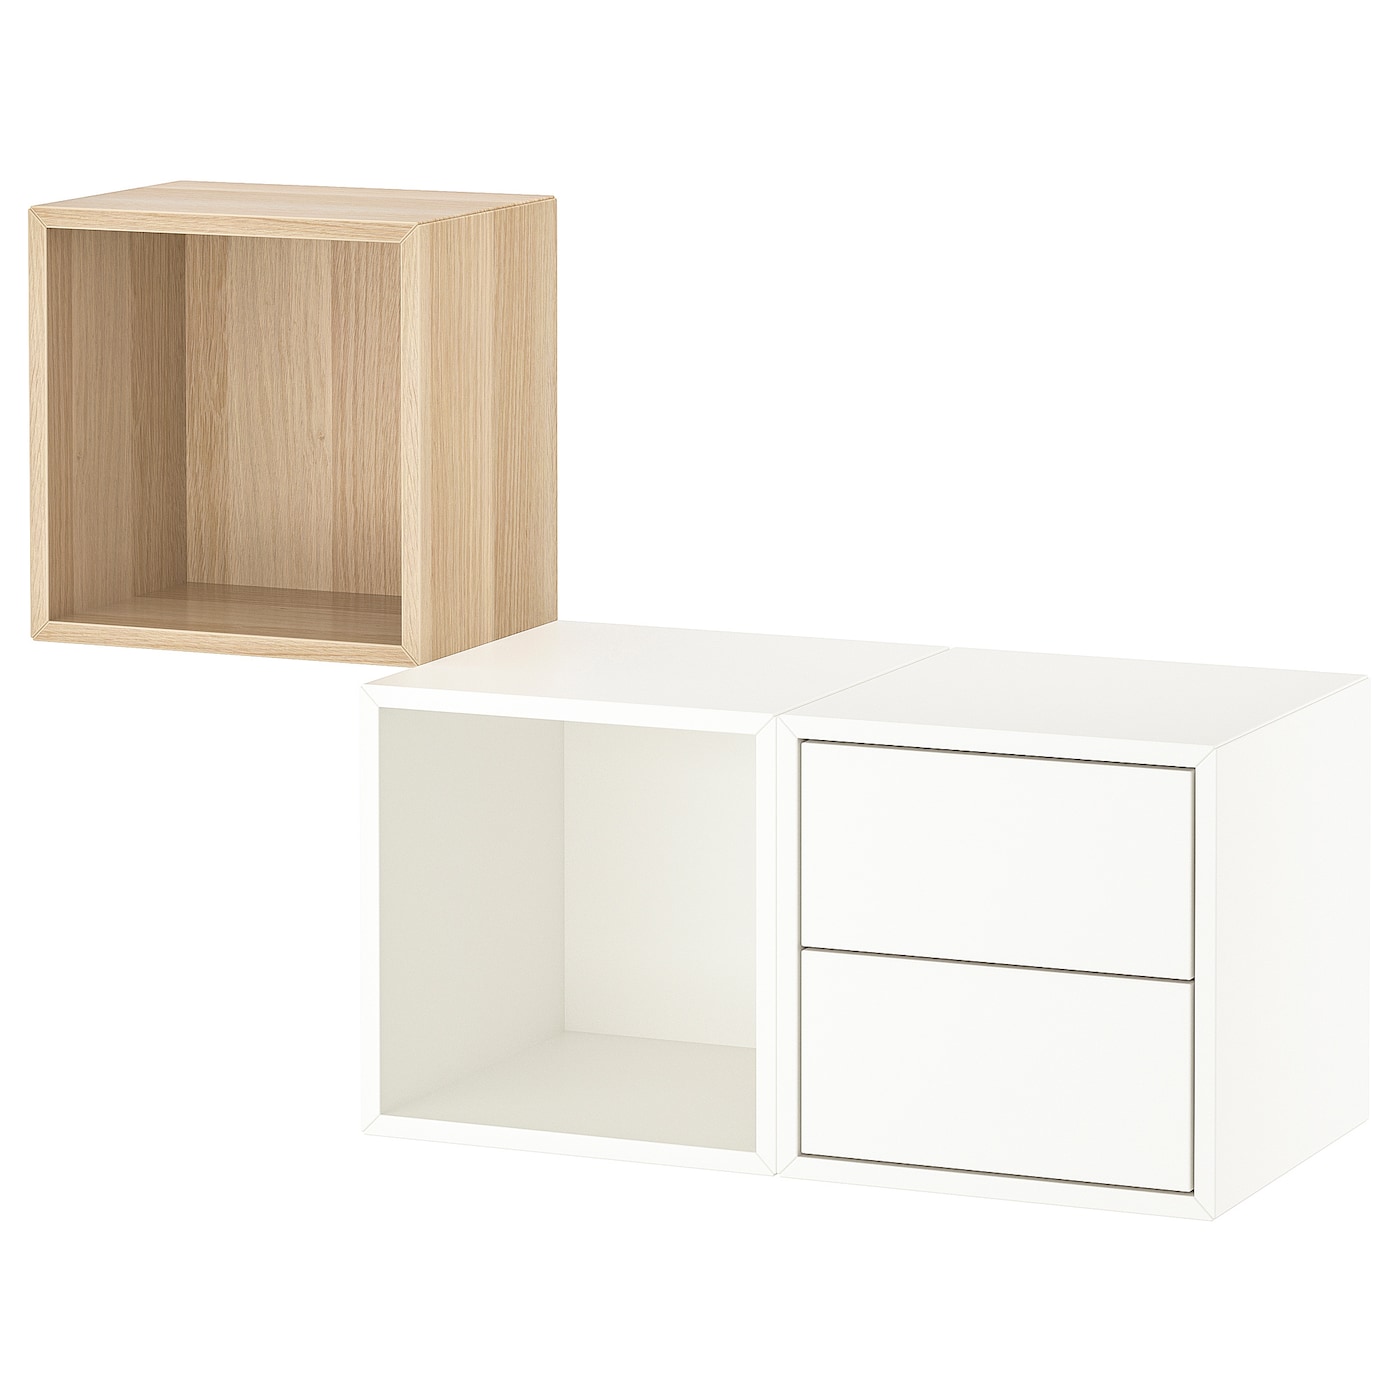 Комбинация навесных шкафов - IKEA EKET, 105x35x70 см, беленый дуб/белый, ЭКЕТ ИКЕА